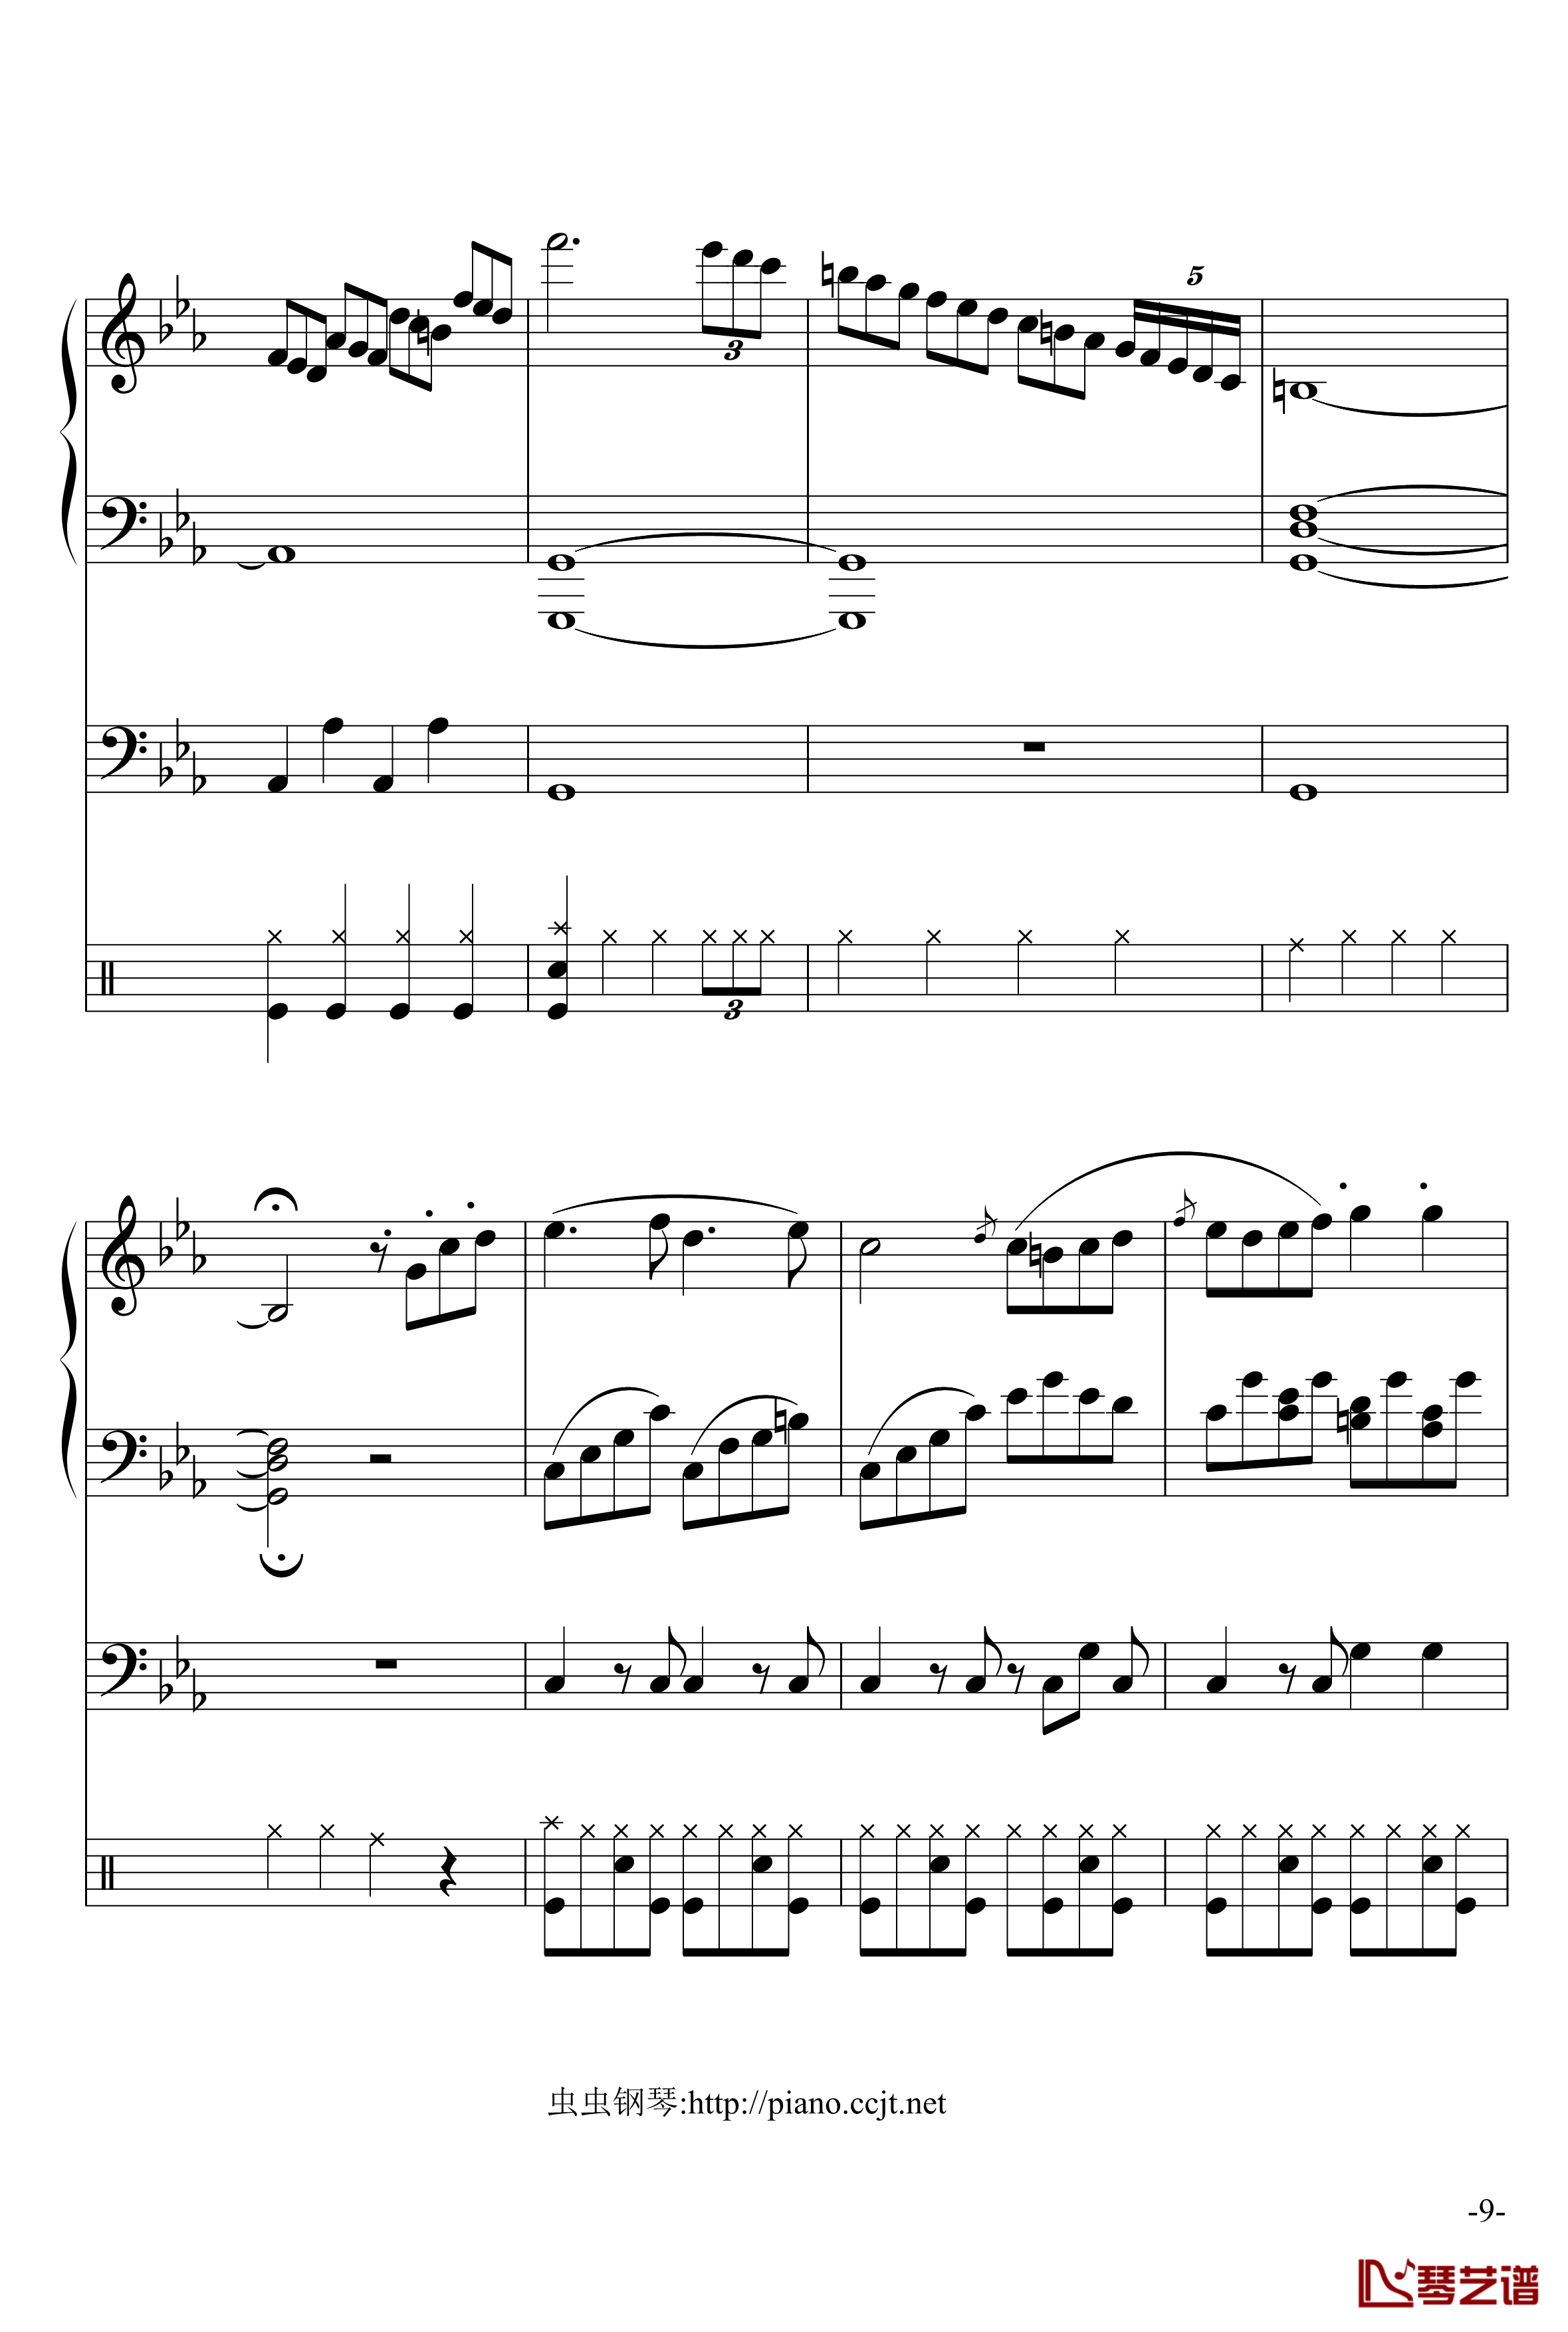 悲怆奏鸣曲钢琴谱-加小乐队-贝多芬-beethoven9